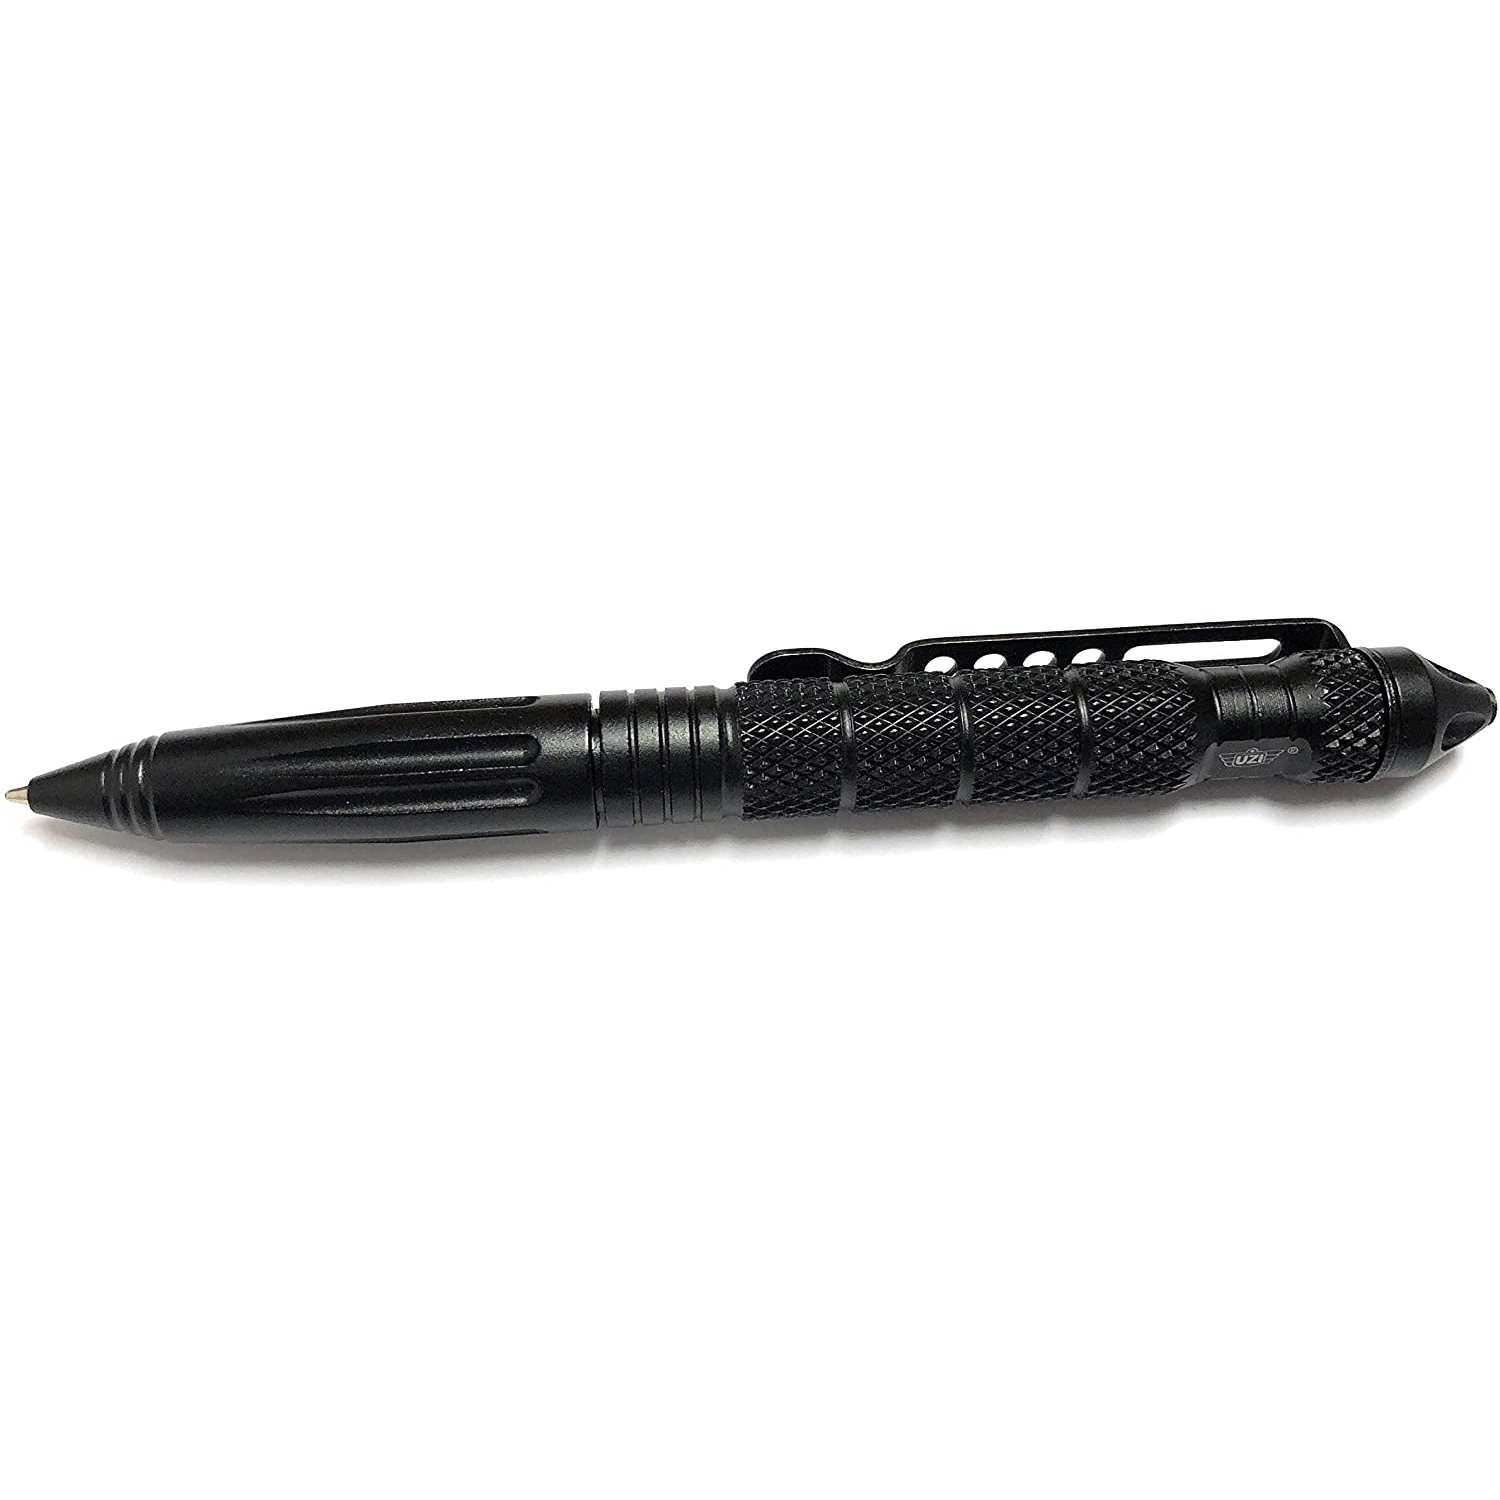 Caliber Gourmet - UZI Tactical Defender Pen 2 Black